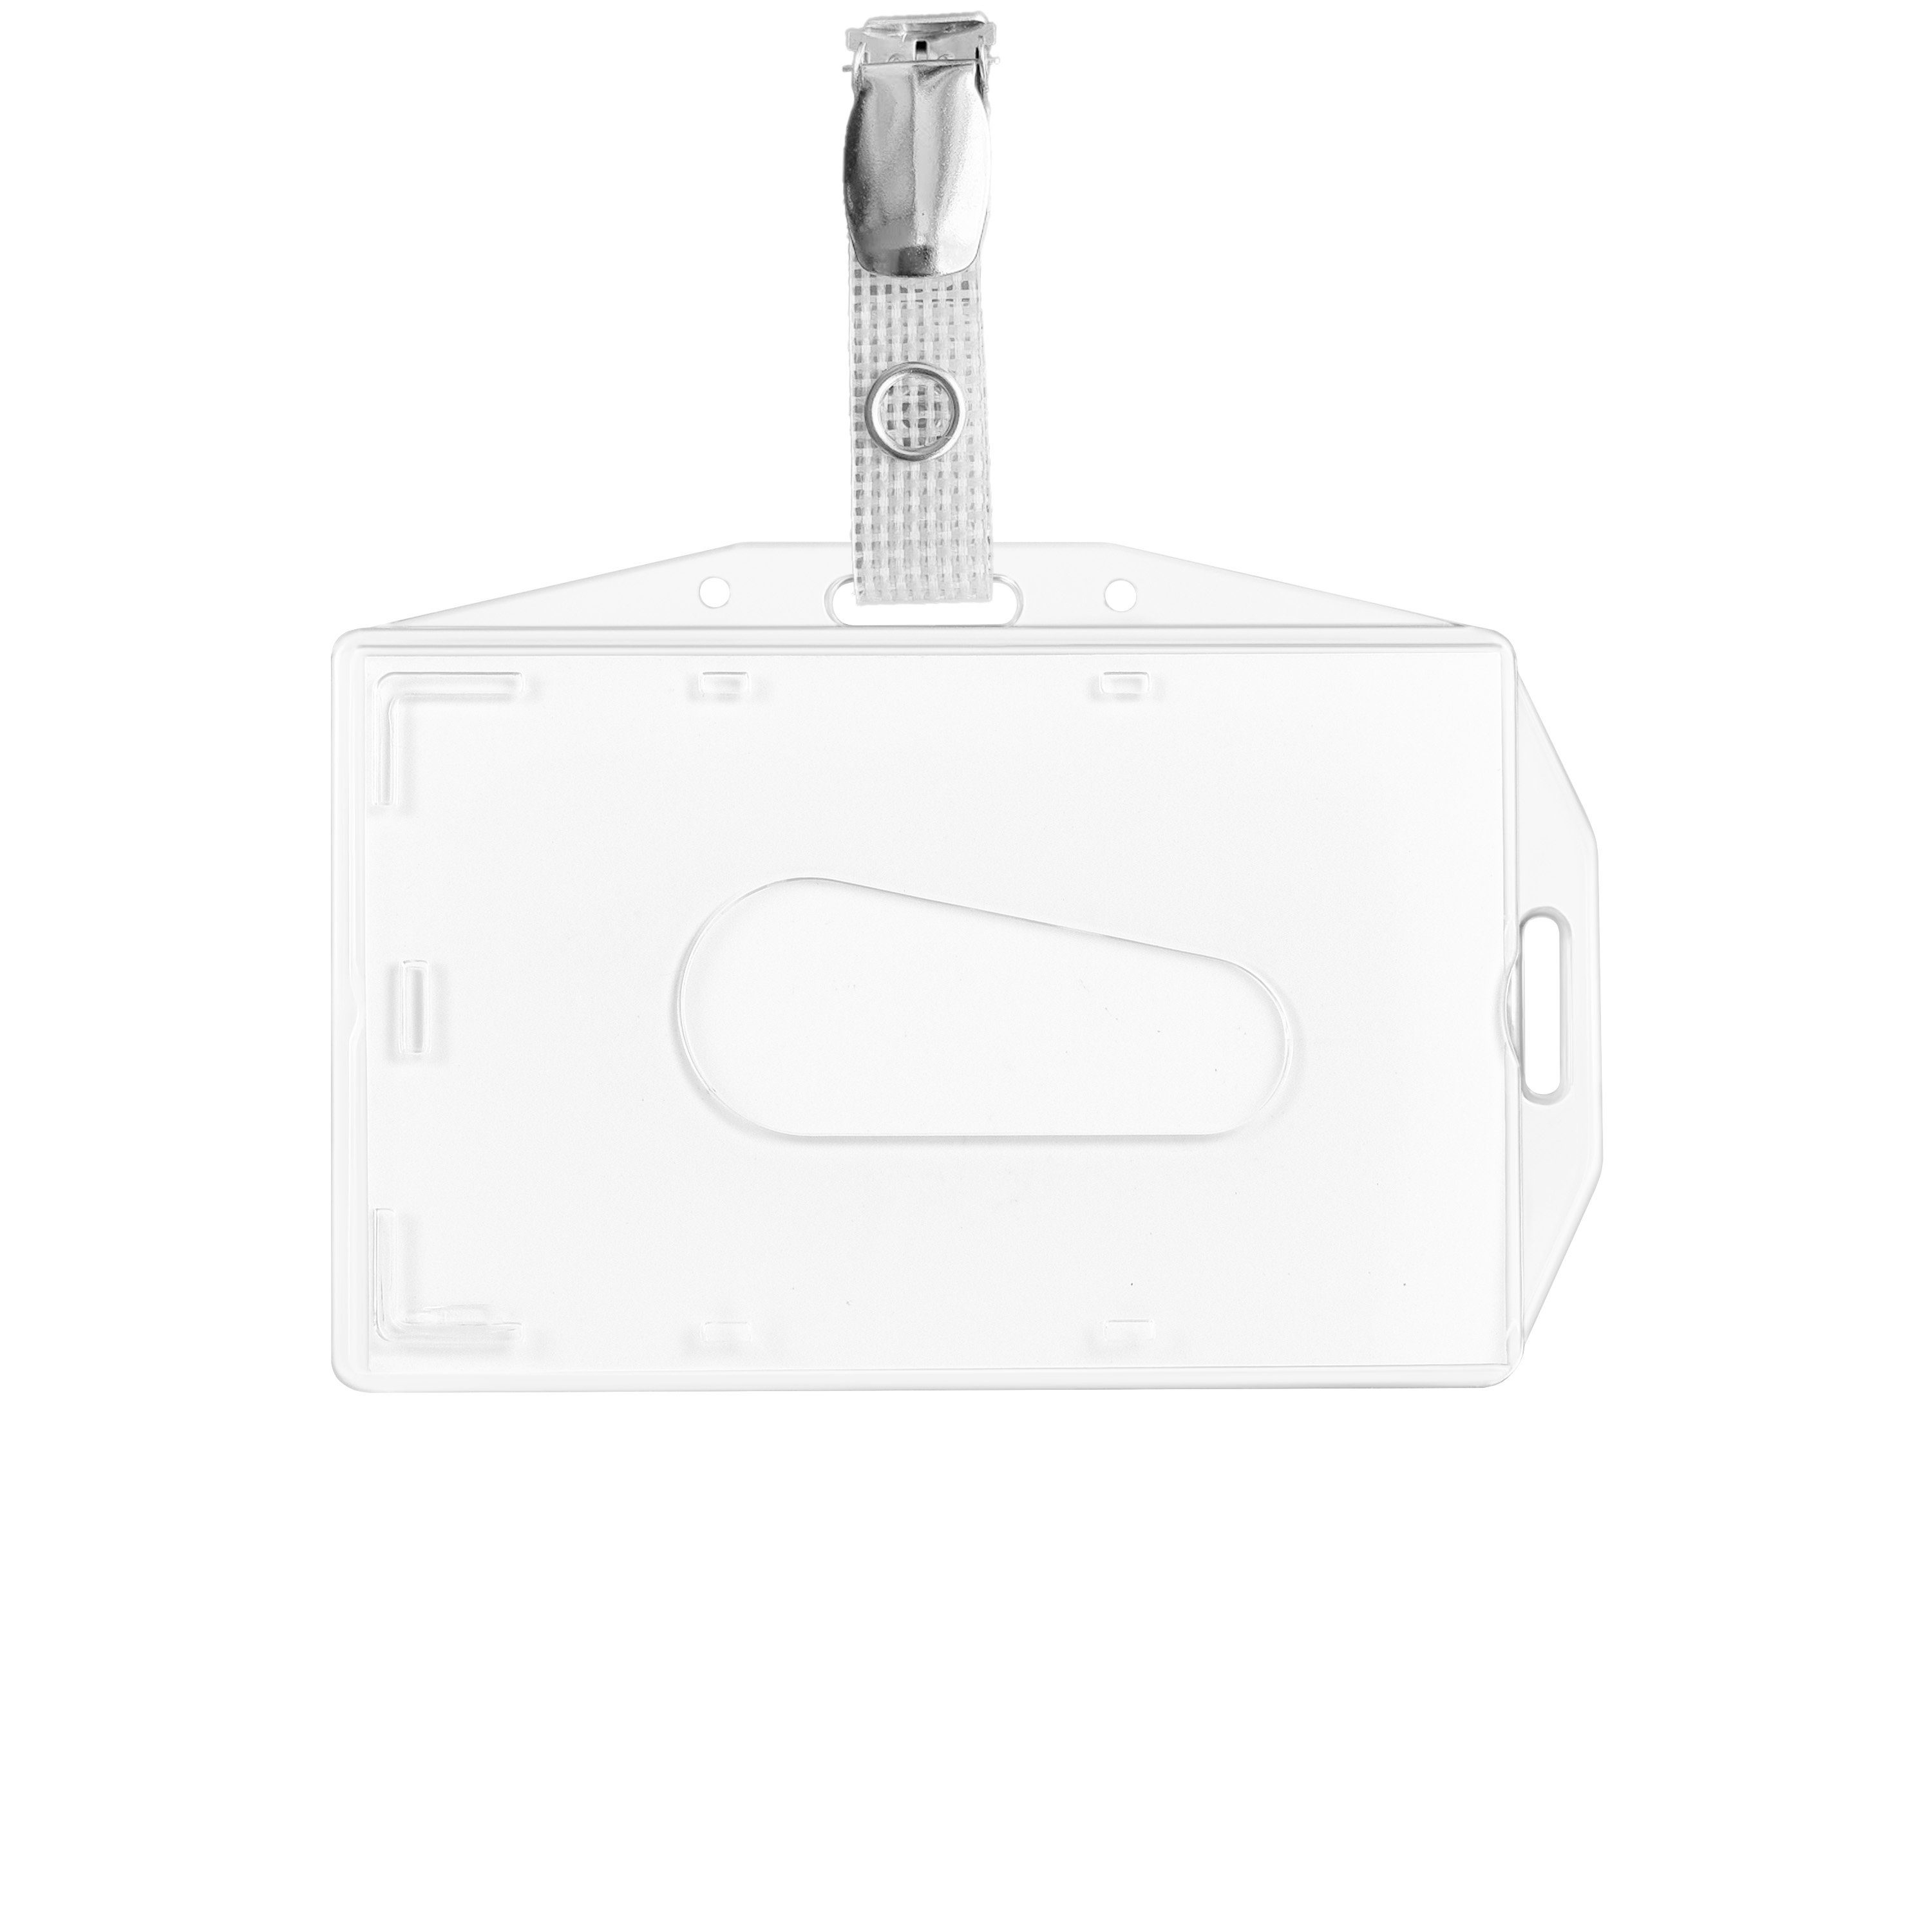 + Schlüsselanhänger Clip WEBBOMB 5x 5x horizontal vertikal u Ausweishalter Kartenhalter Dual Use